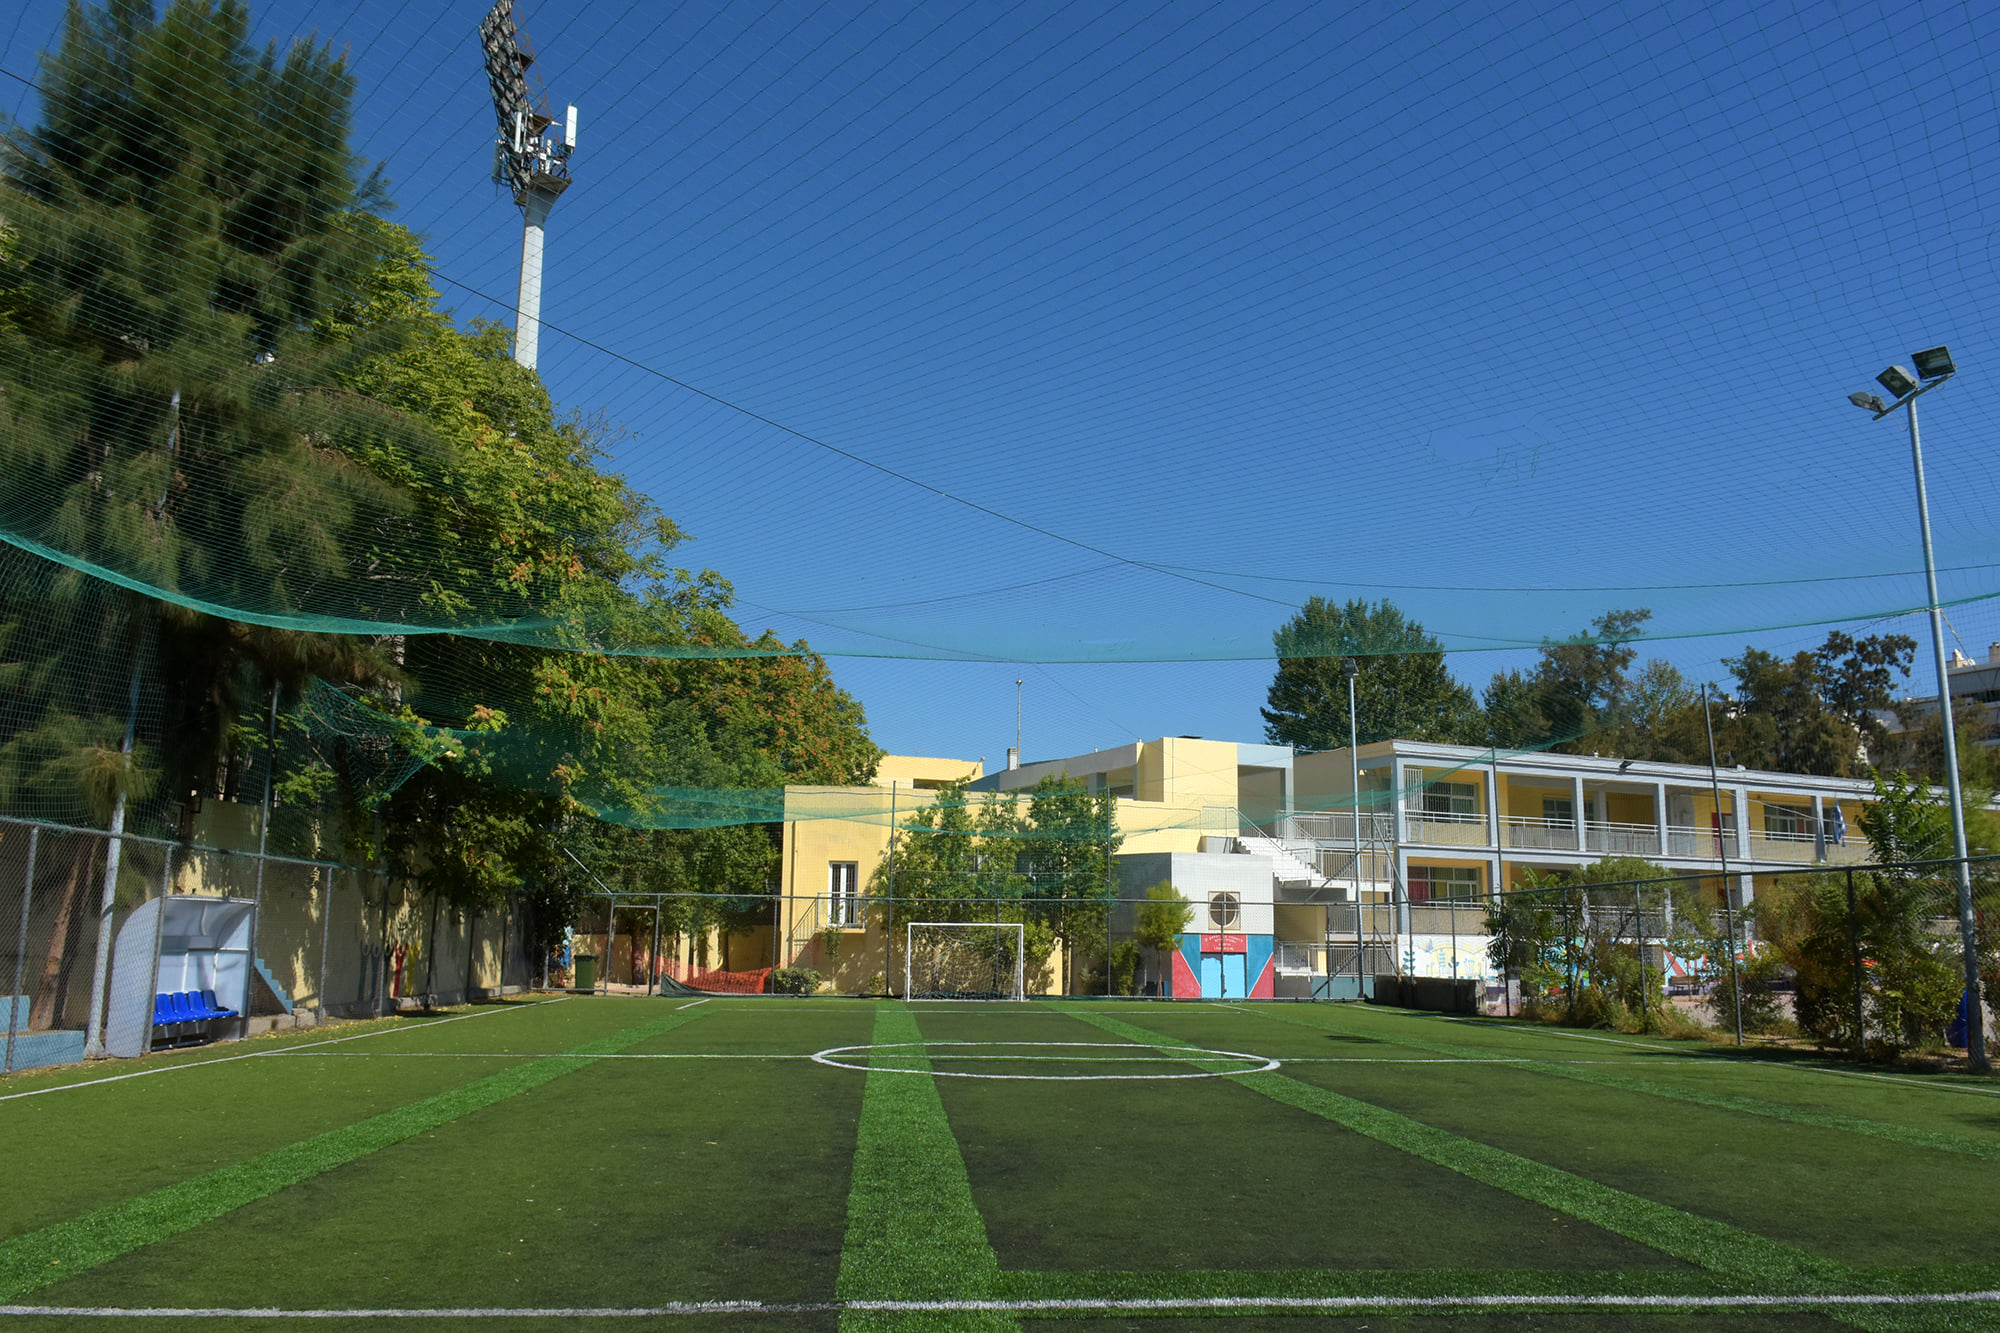 Βελτίωση αθλητικών υποδομών στα σχολεία ζητά η Επιτροπή Παιδείας